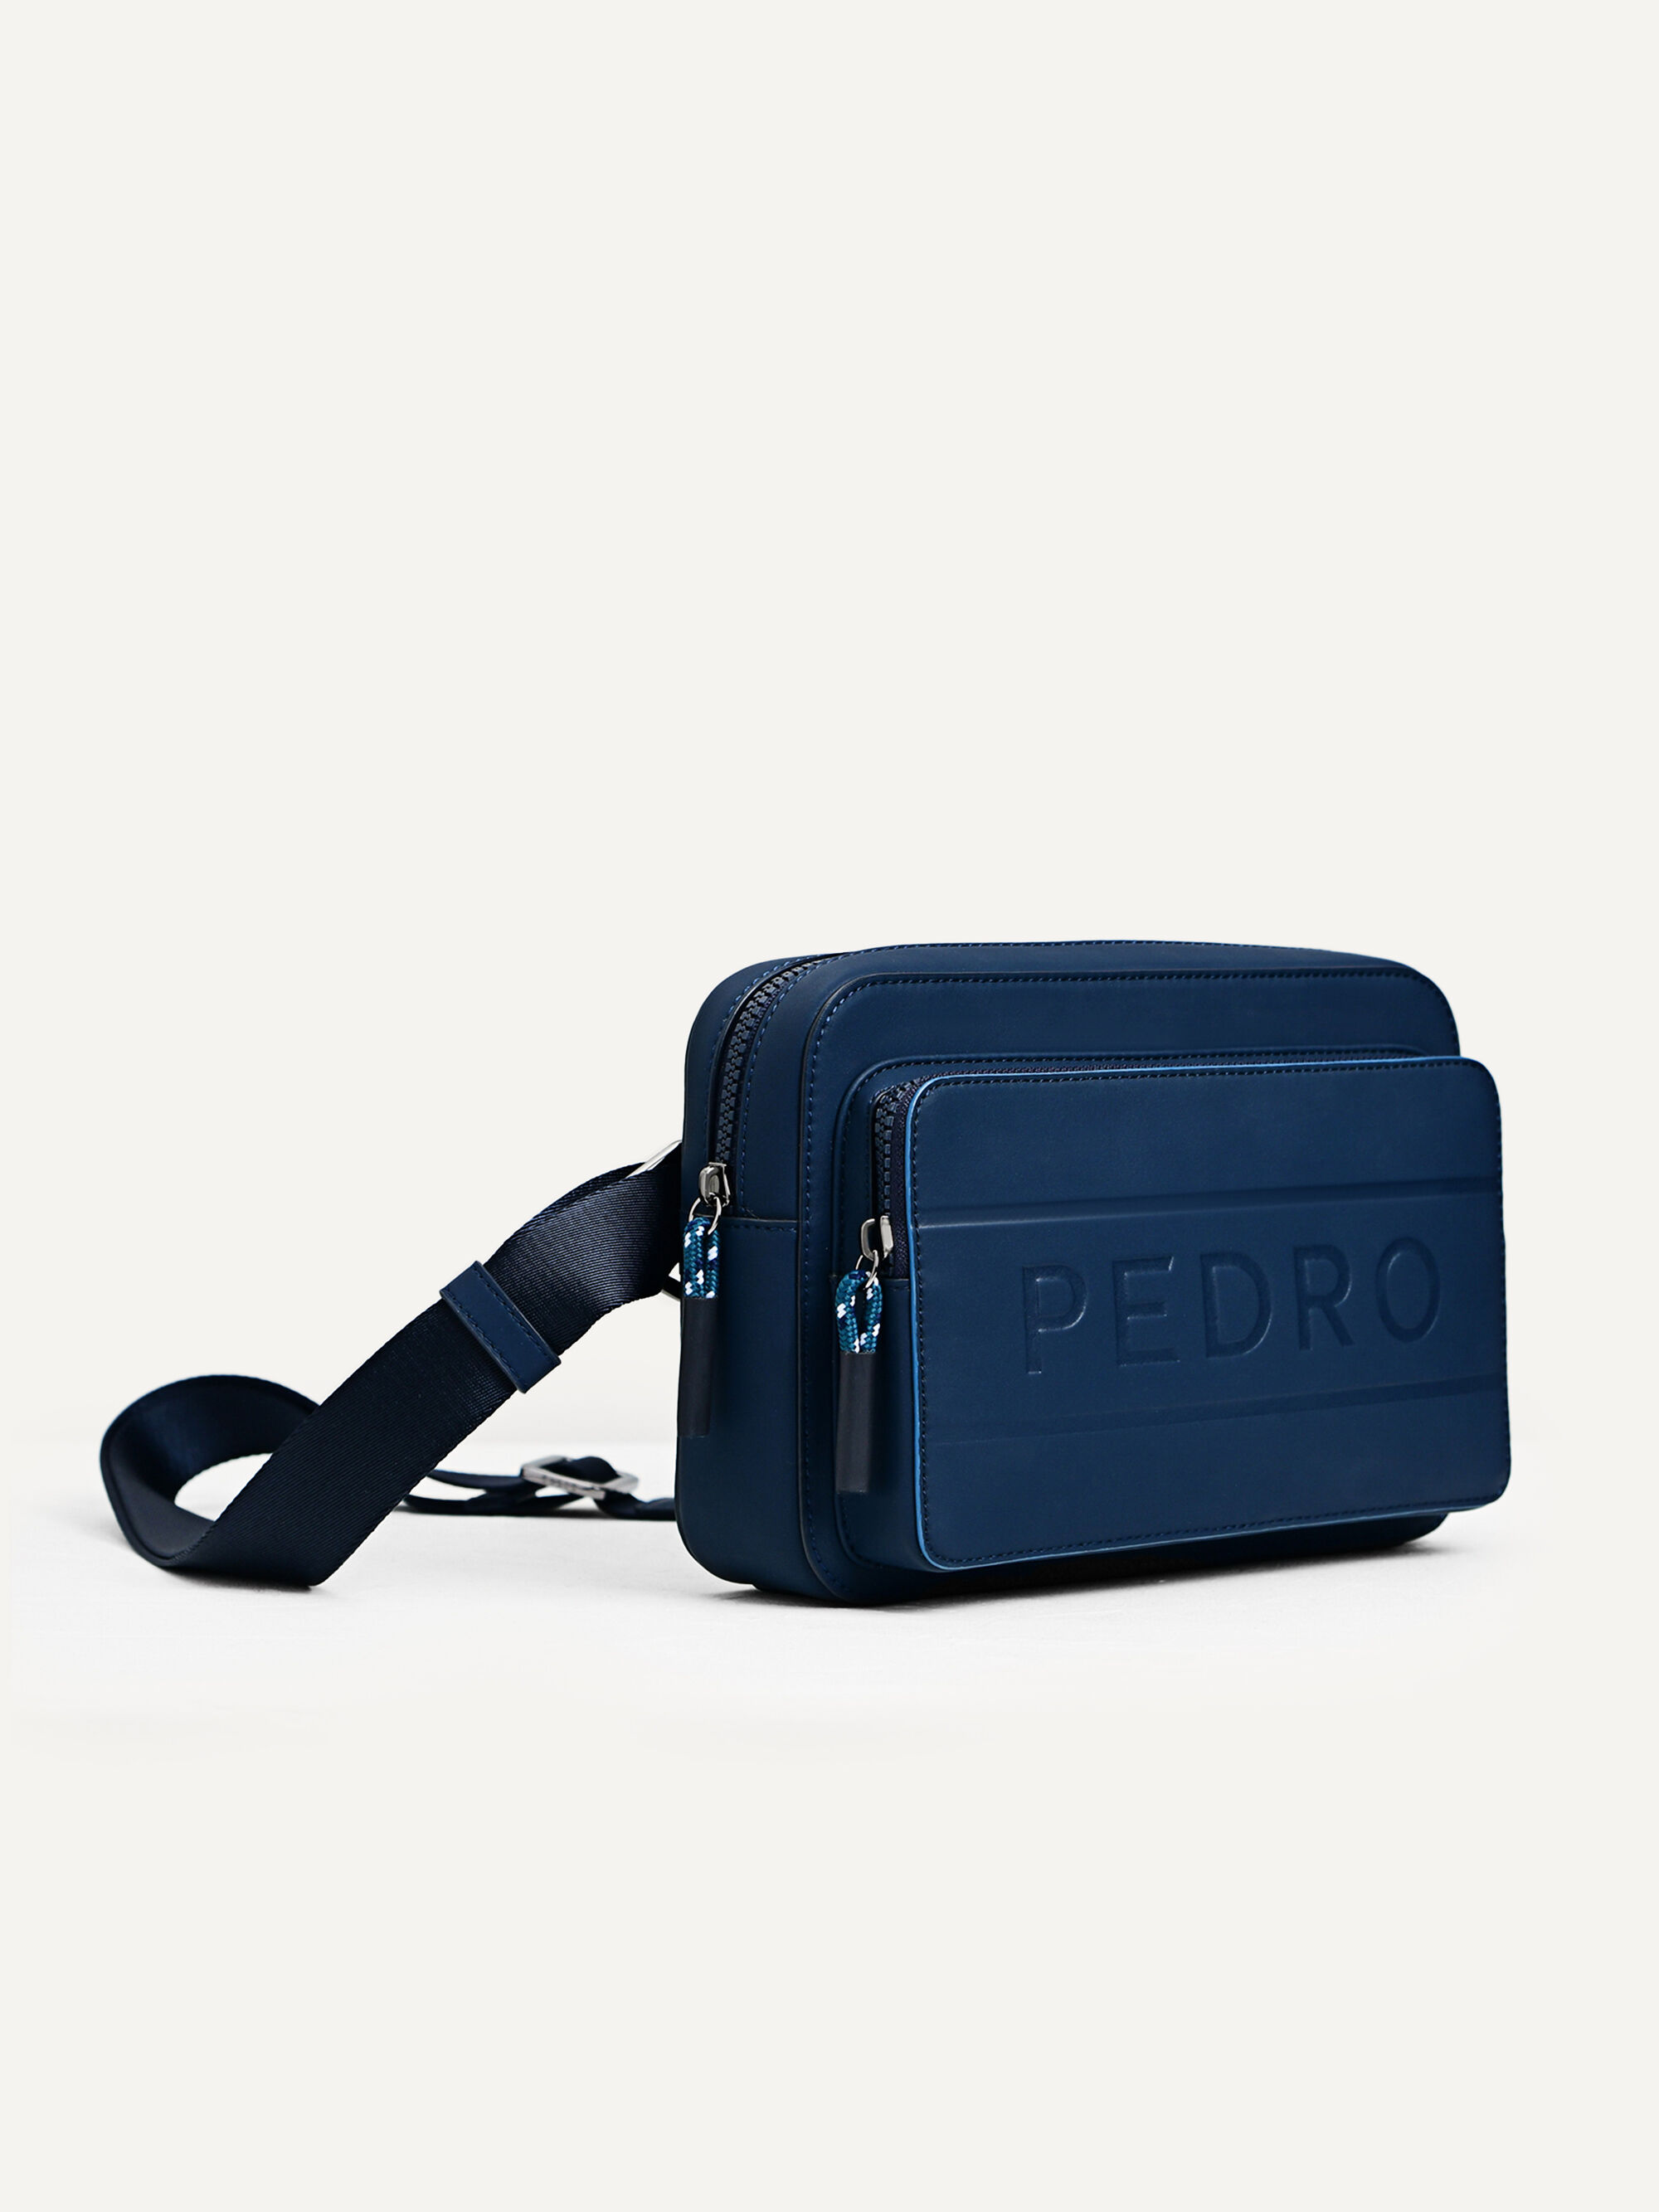 Túi đeo chéo nam Pedro Flynn Casual Sling Bag xanh navy